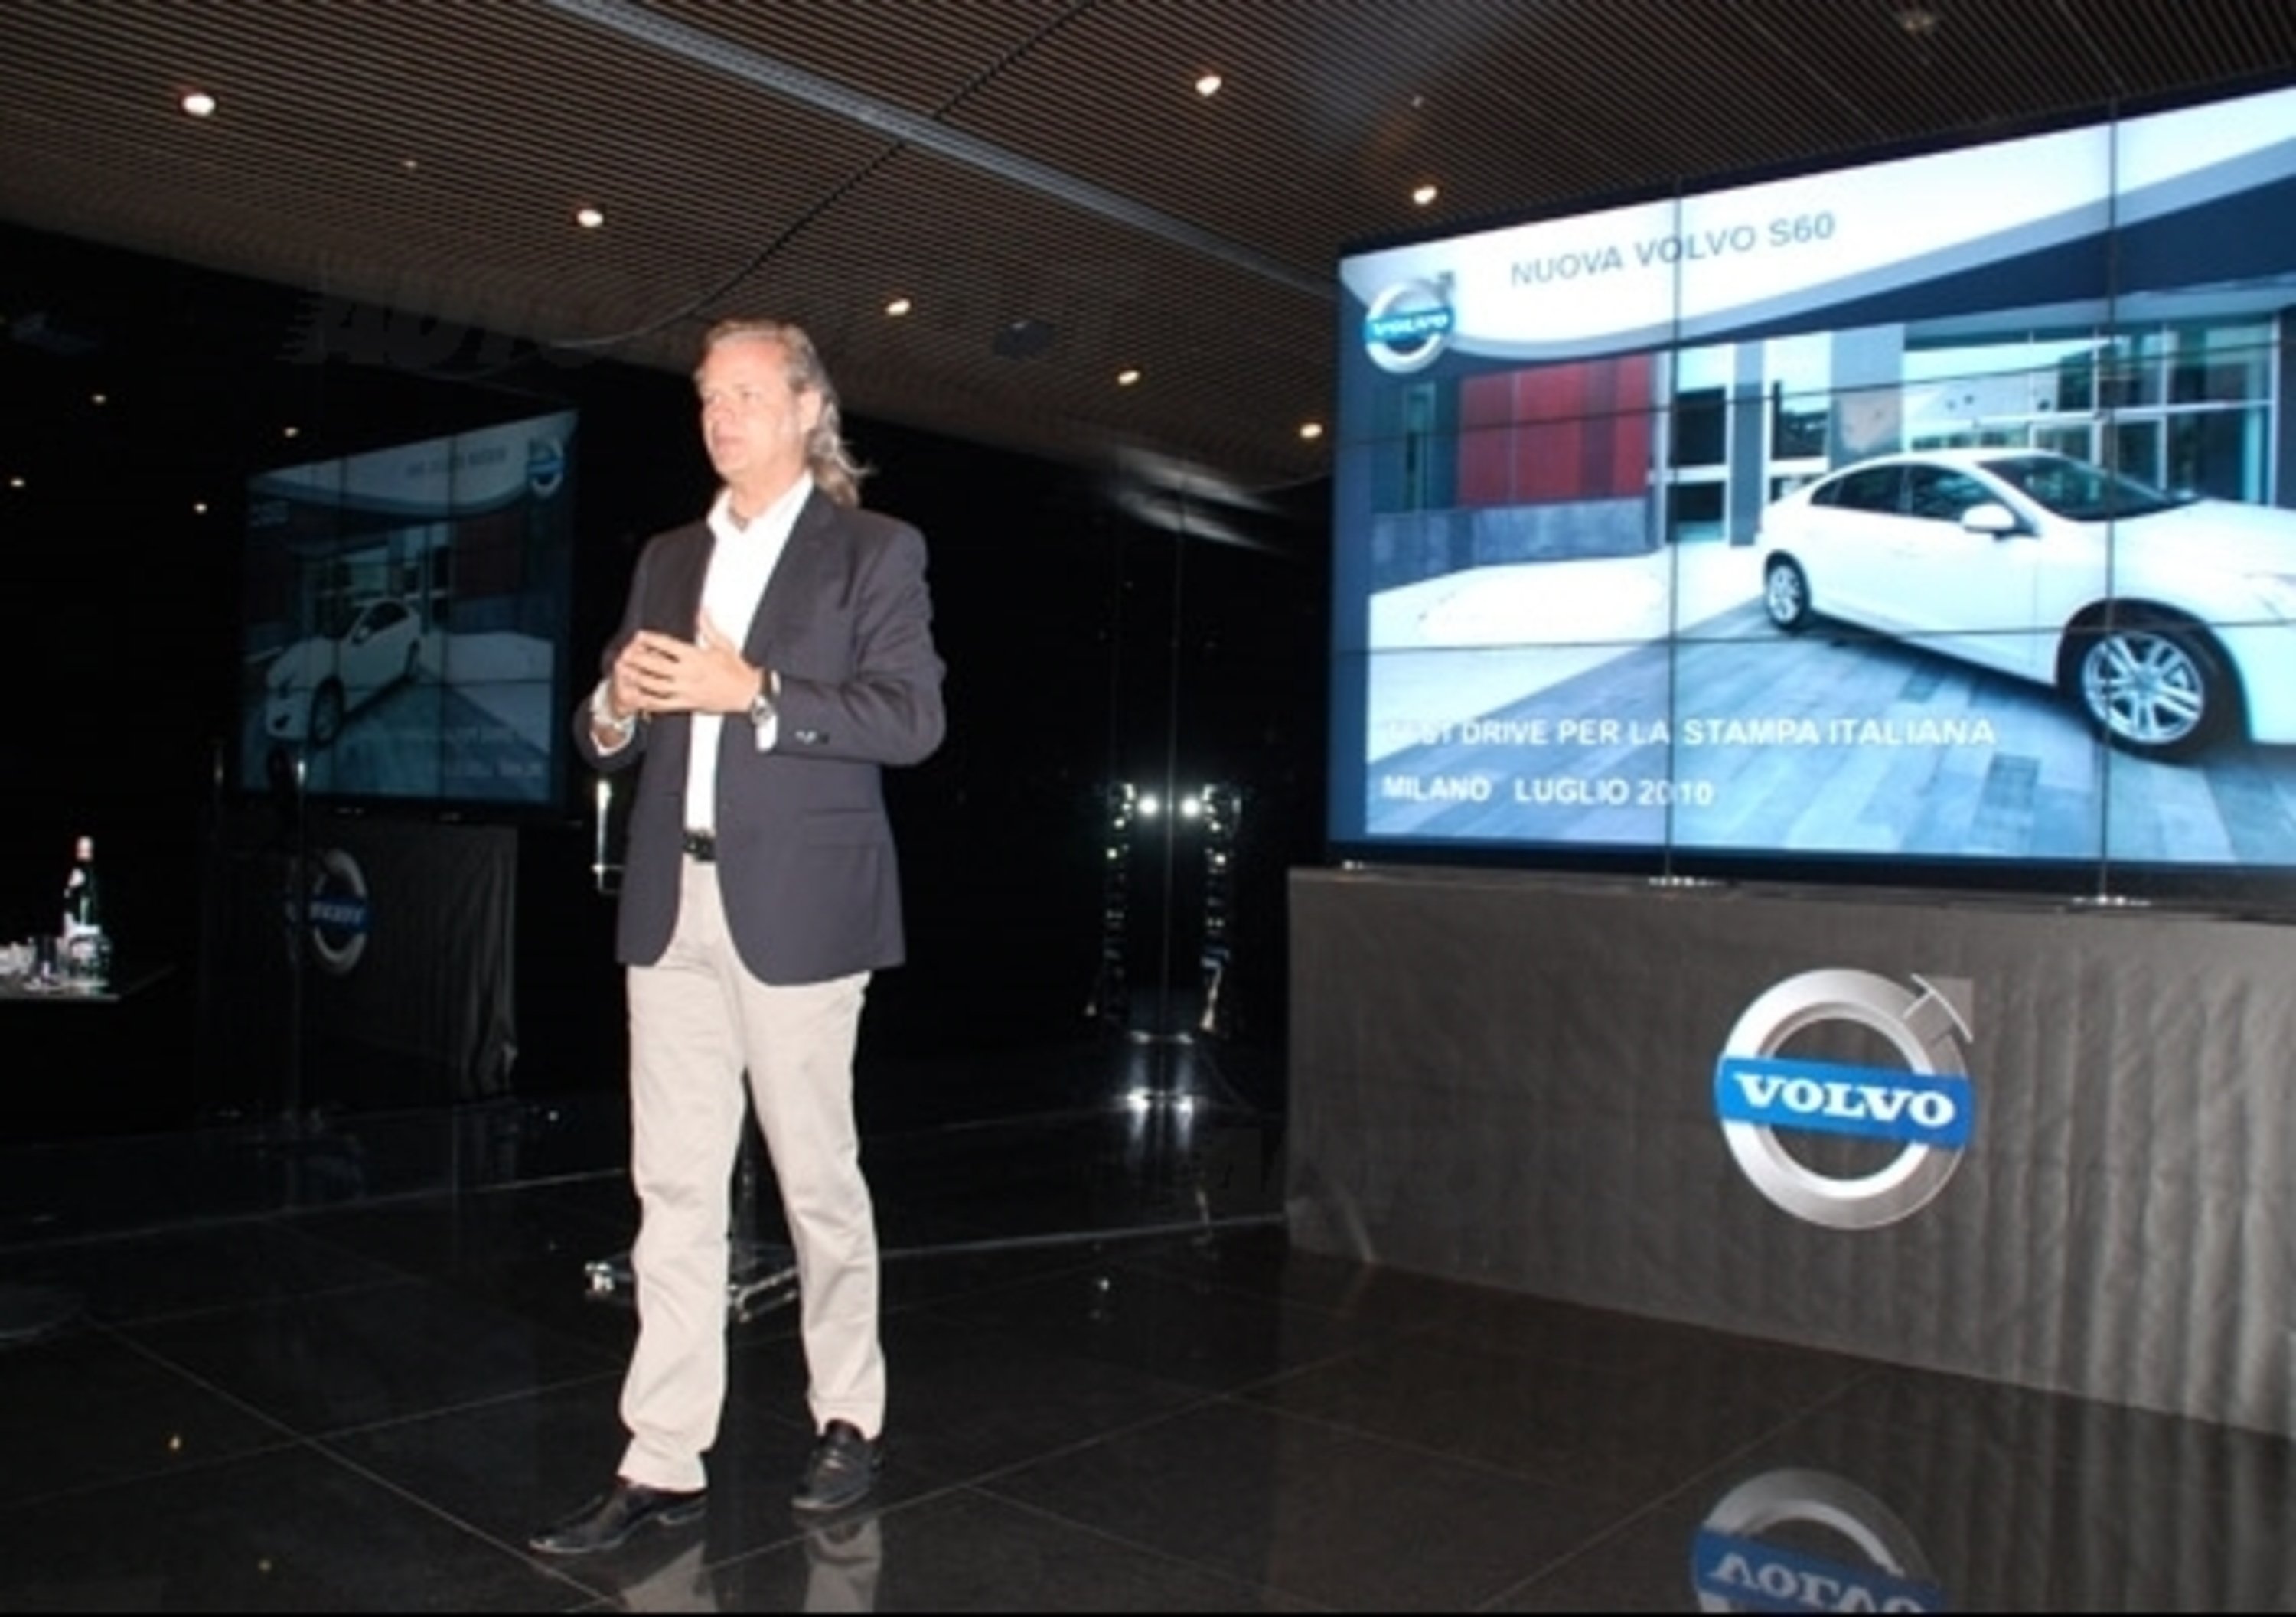 nuova Volvo S60 - la conferenza stampa